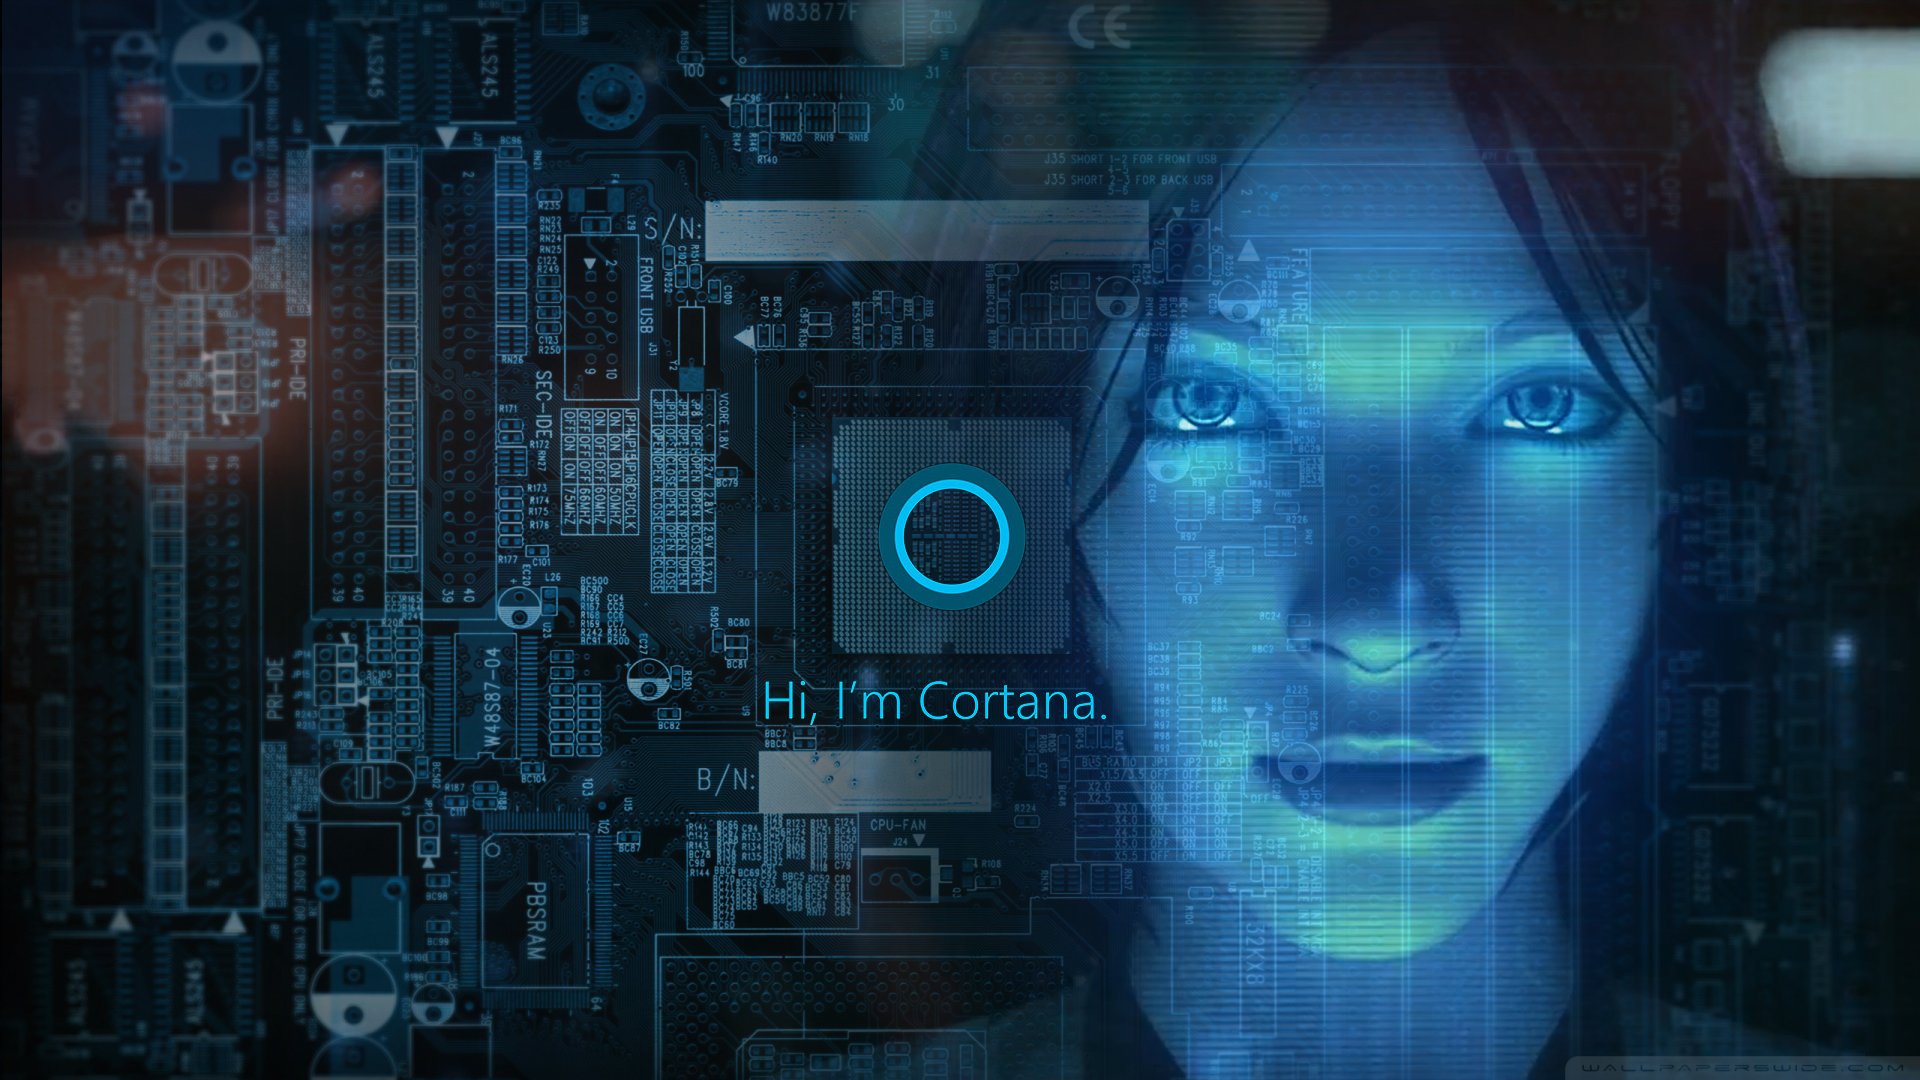 Cortana Windows 10 Wallpaper by ToxicFlint on